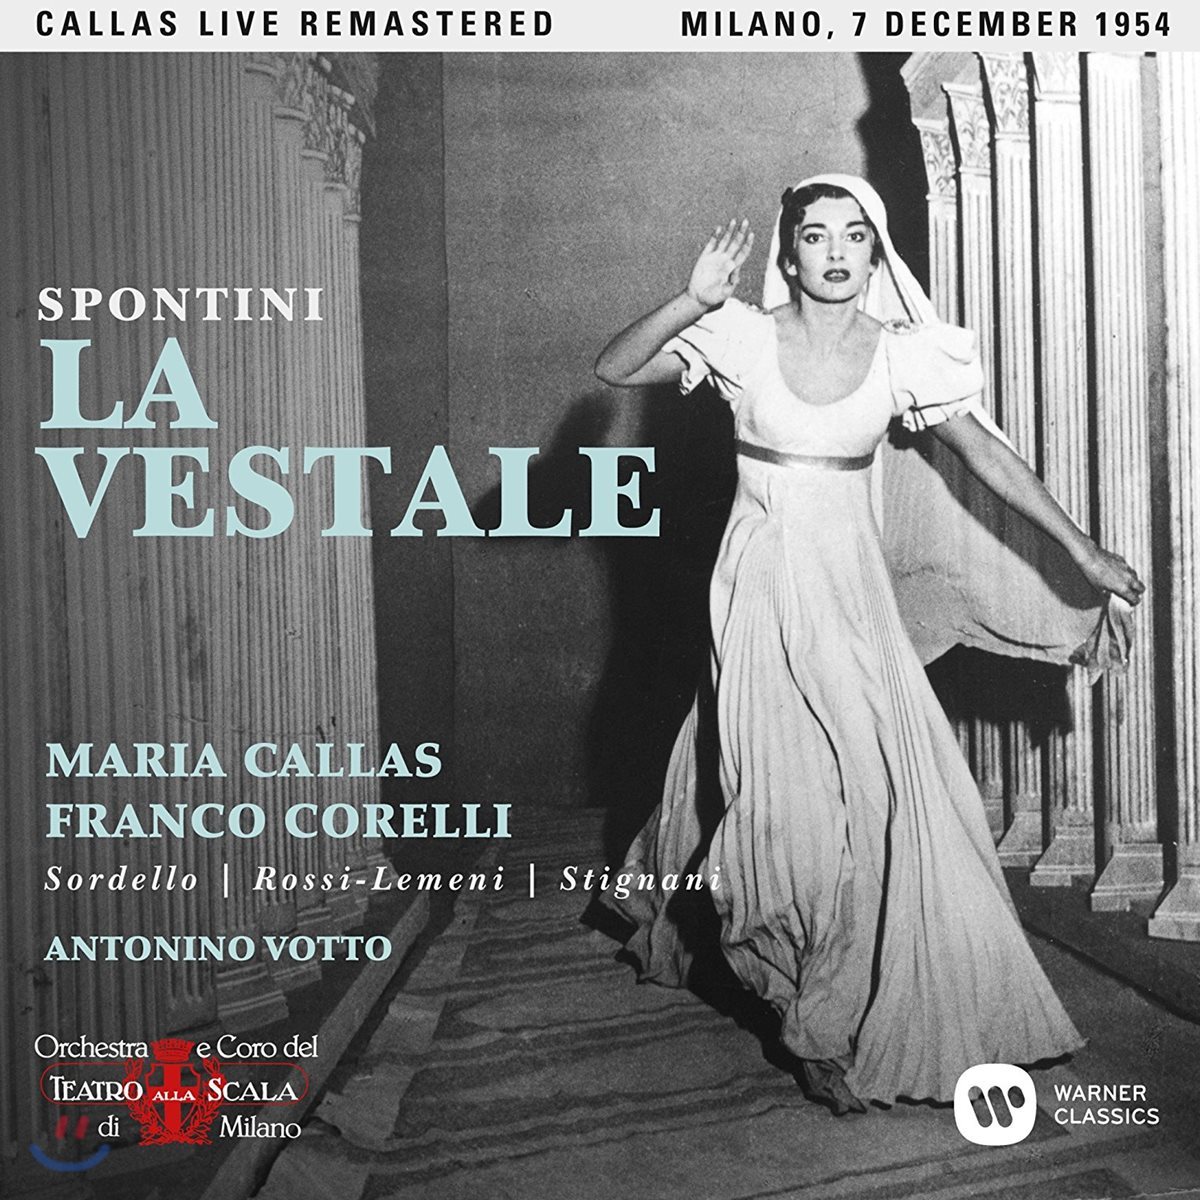 Maria Callas / Franco Corelli 스폰티니: 베스타의 여사제 - 마리아 칼라스, 프랑코 코렐리 / 1954년 밀라노 라 스칼라 실황 (Gasparo Spontini: La Vestale)